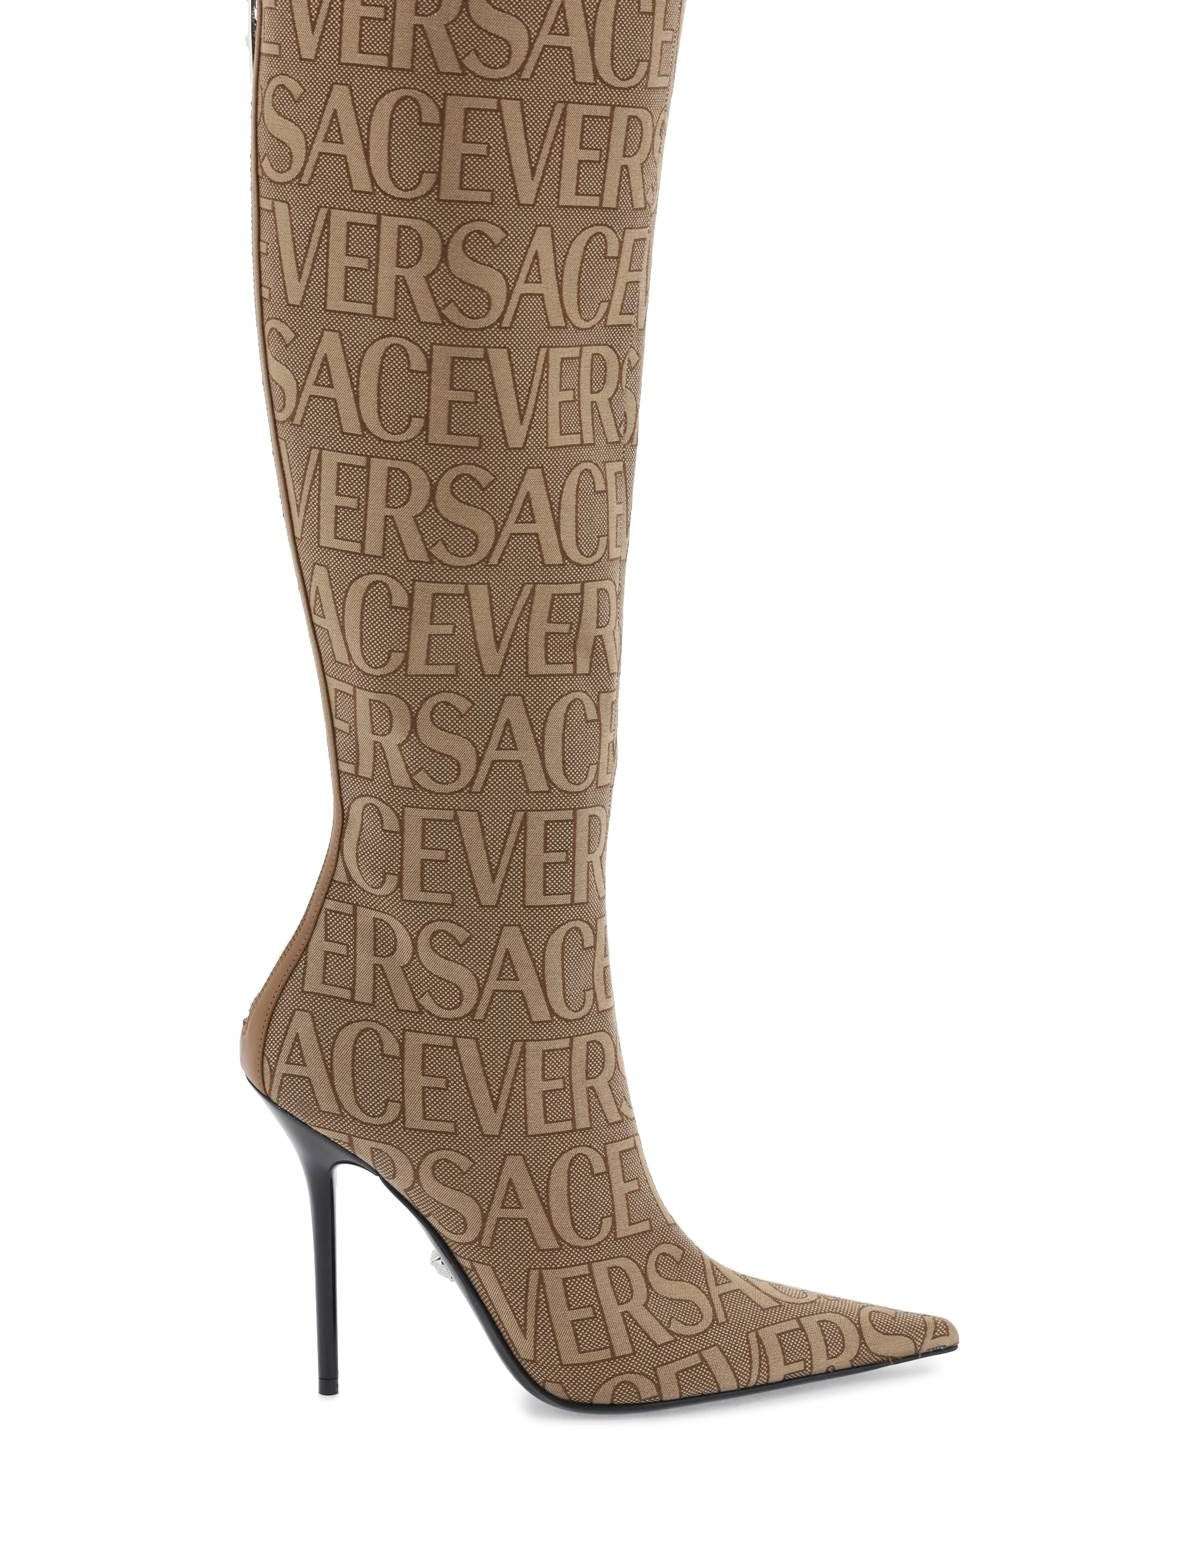 versace-versace-allover-boots.jpg